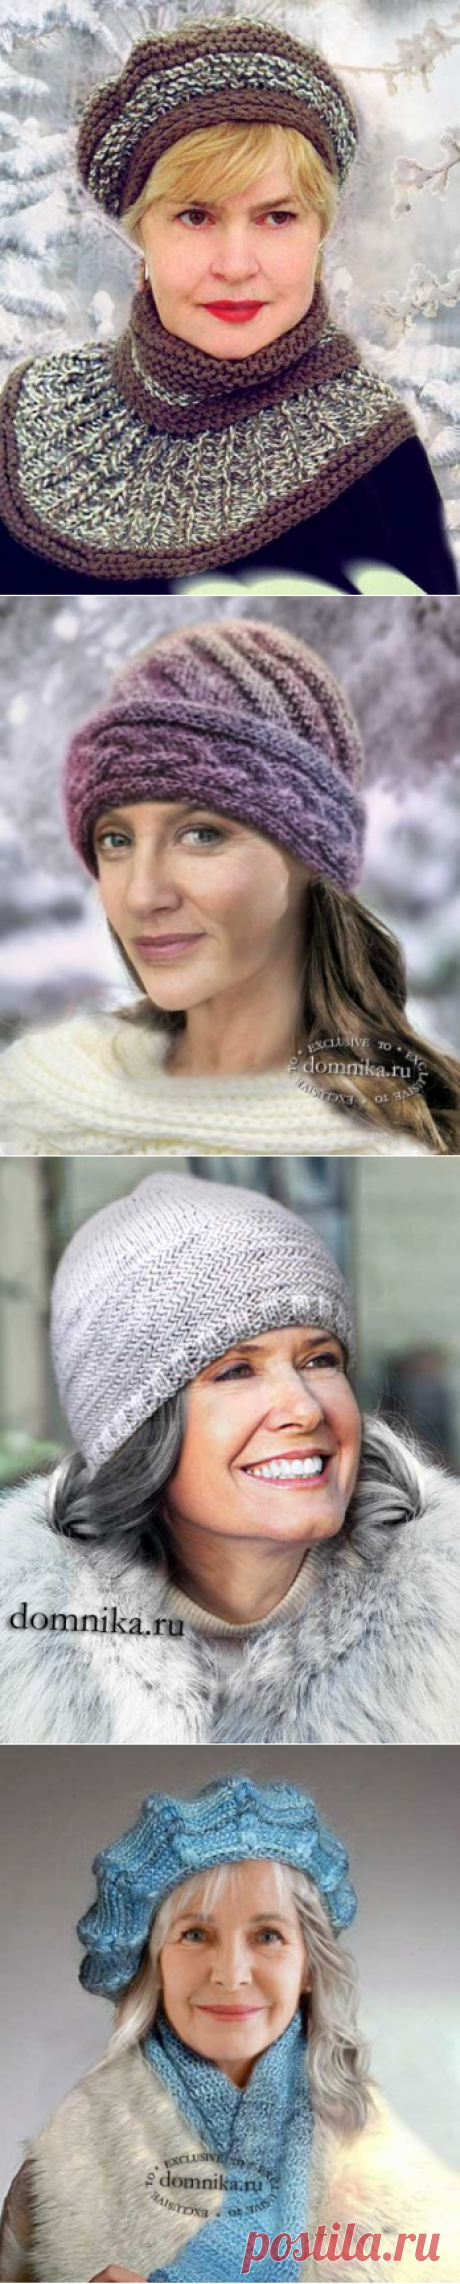 Зимние шапки для пожилых дам 60 лет - вязание шапки для женщин старшего возраста